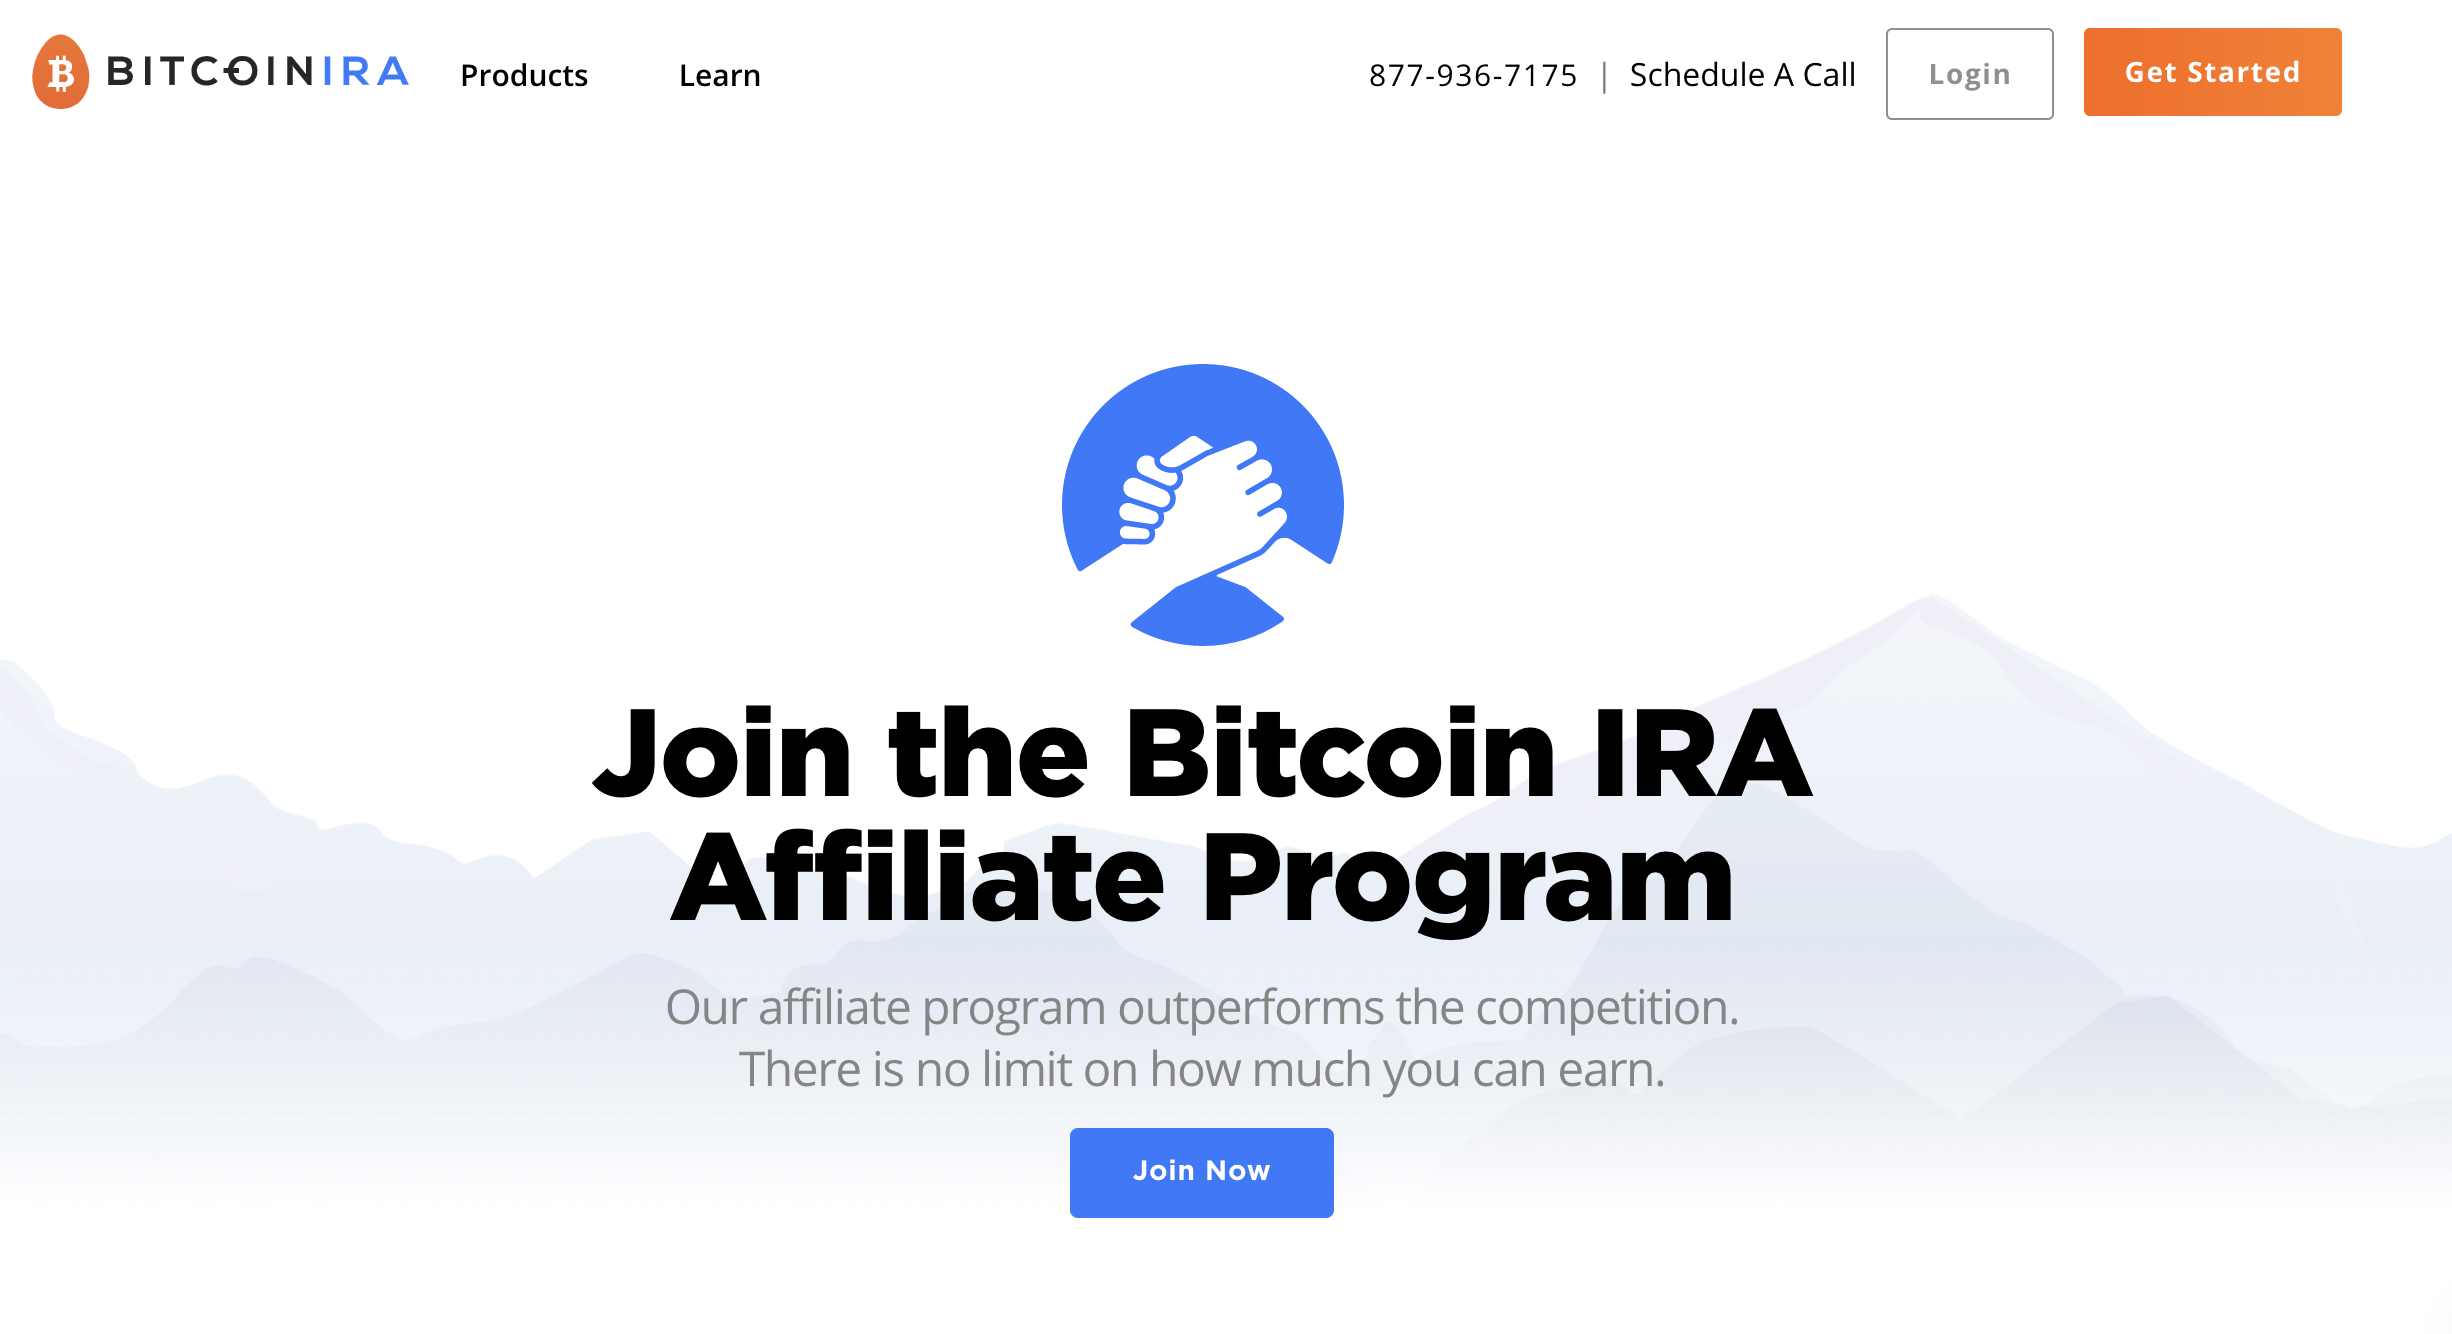 Bitcoin IRA tilknyttet program